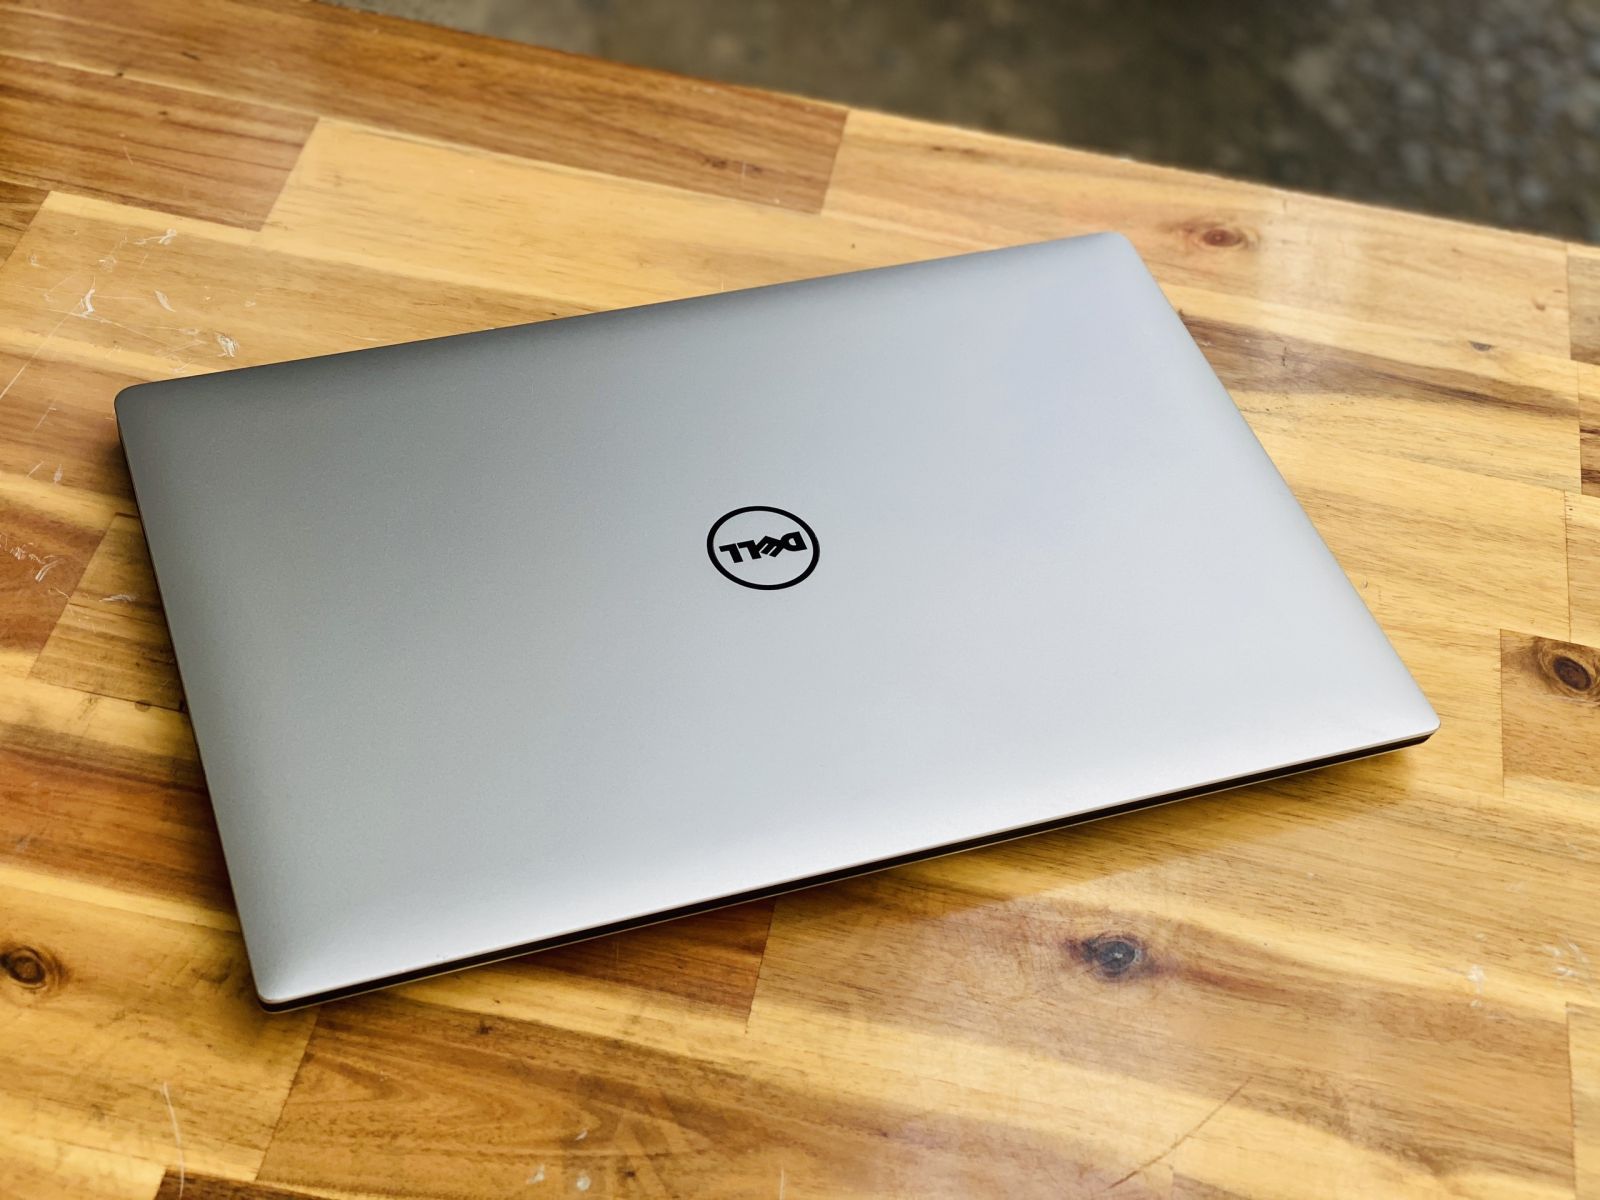 Laptop Dell Precision 5520/ I7 7820HQ/ Vga Quadro M1200 4G/ 4K/ Đỉnh cao doanh nhân/ 3D Render Đồ Họa/ Giá rẻ3